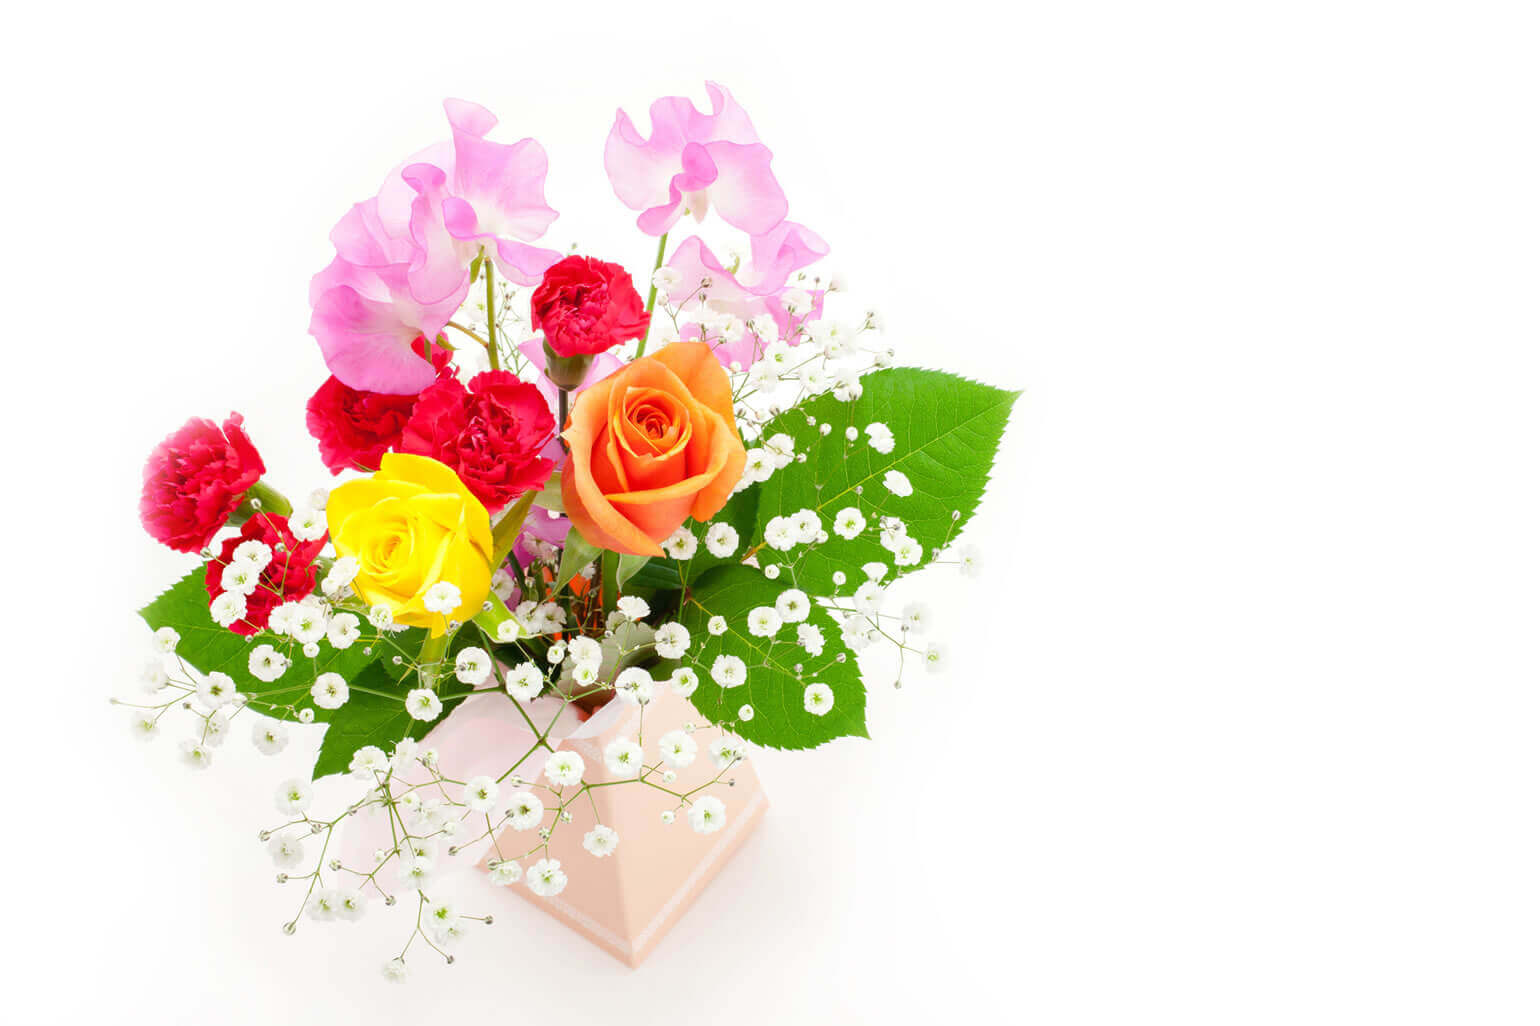 カーネーションの押し花 ドライフラワー 一輪挿し 素敵な楽しみ方をご紹介 花や花束の宅配 フラワーギフト通販なら花キューピット 贈り物 プレゼントで花を贈ろう